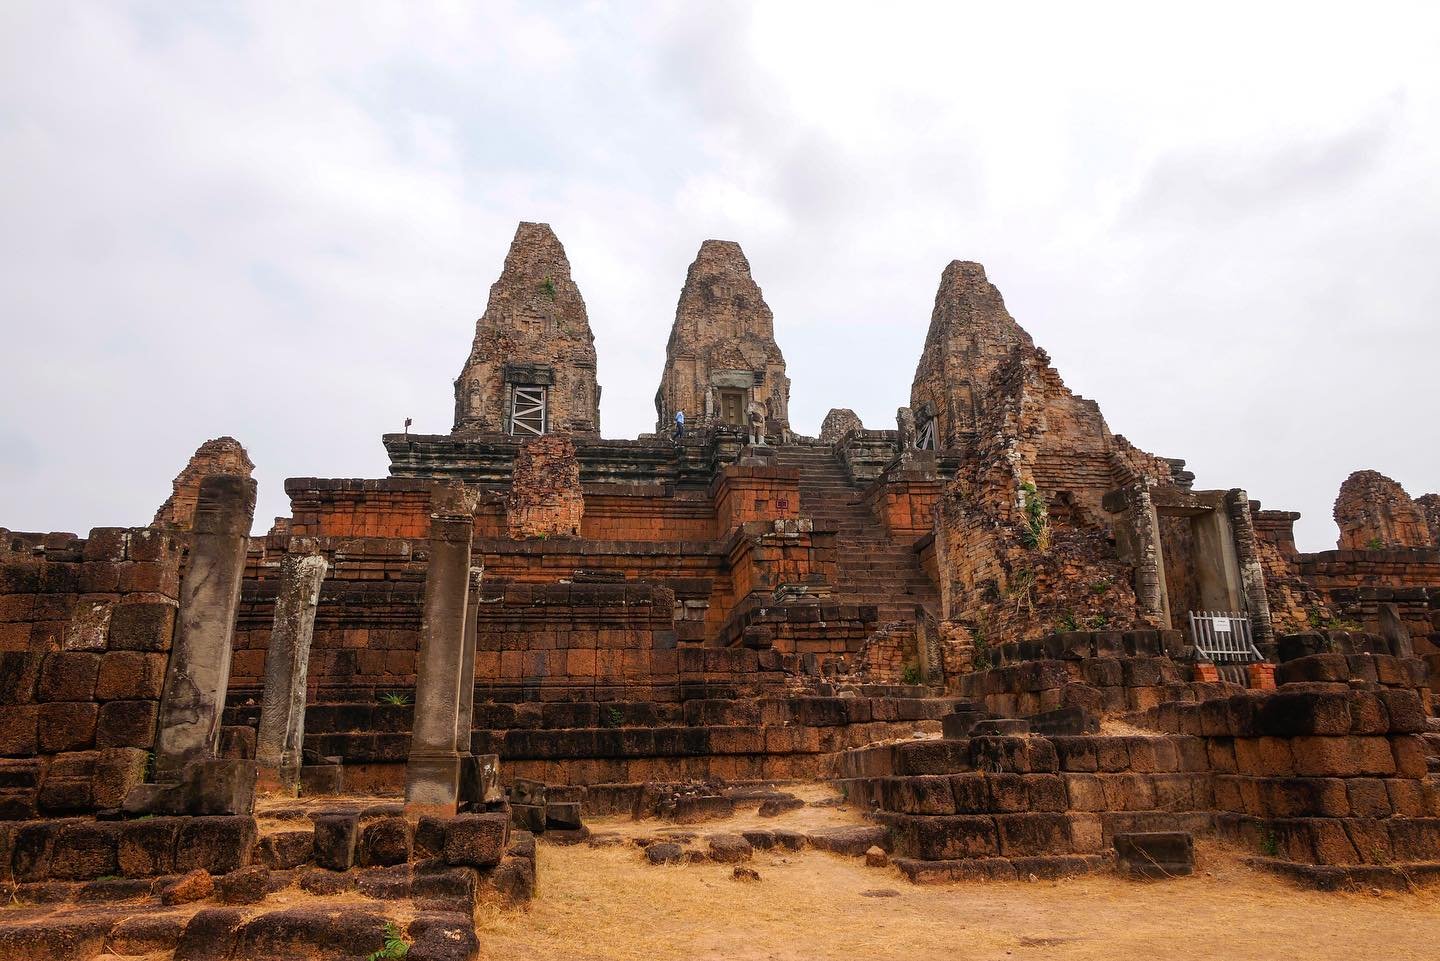 Trois jours seront consacr&eacute;s &agrave; la visite du site arch&eacute;ologique Angkor. On entame notre premi&egrave;re!

Nous commen&ccedil;ons par le &laquo;&nbsp;grand tour&nbsp;&raquo; o&ugrave; on retrouve les &laquo;&nbsp;petits temples&nbs